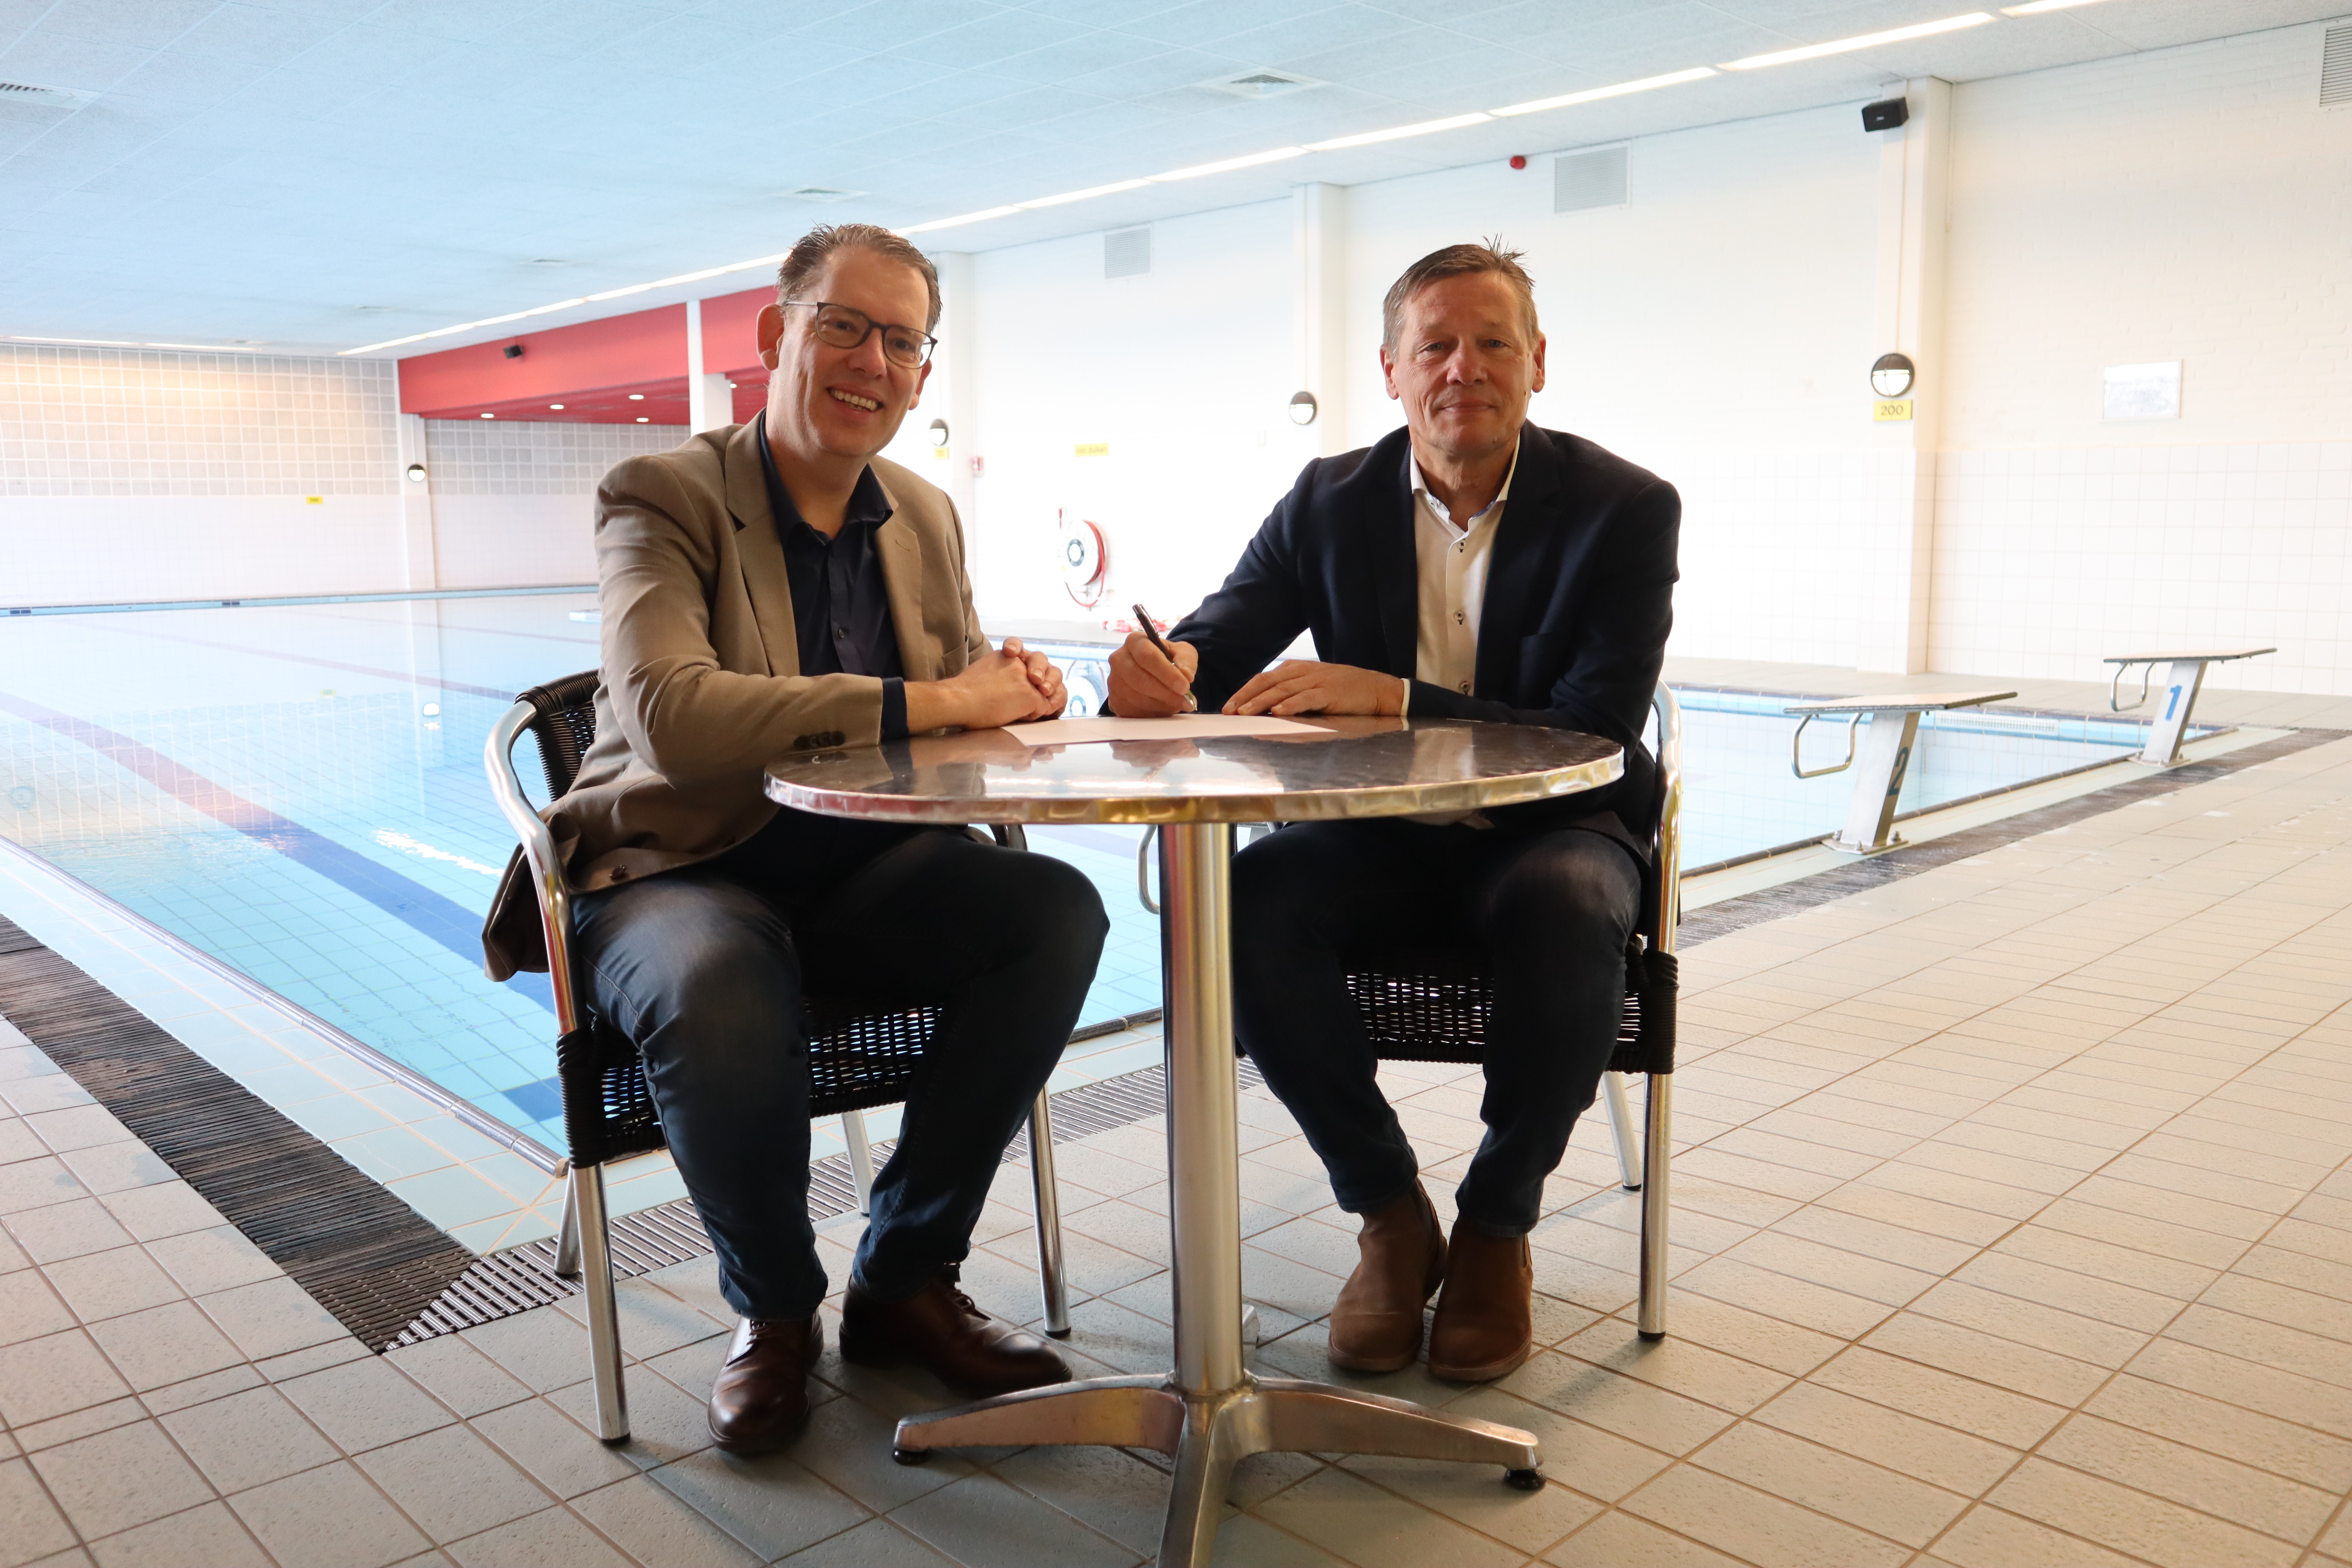 Wethouder Mark Gerritsen (links op de foto) en Winand Willigers, directeur SWEM BV, (rechts op de foto) zetten hun handtekening, met op de achtergrond het binnenzwembad van Eijsden